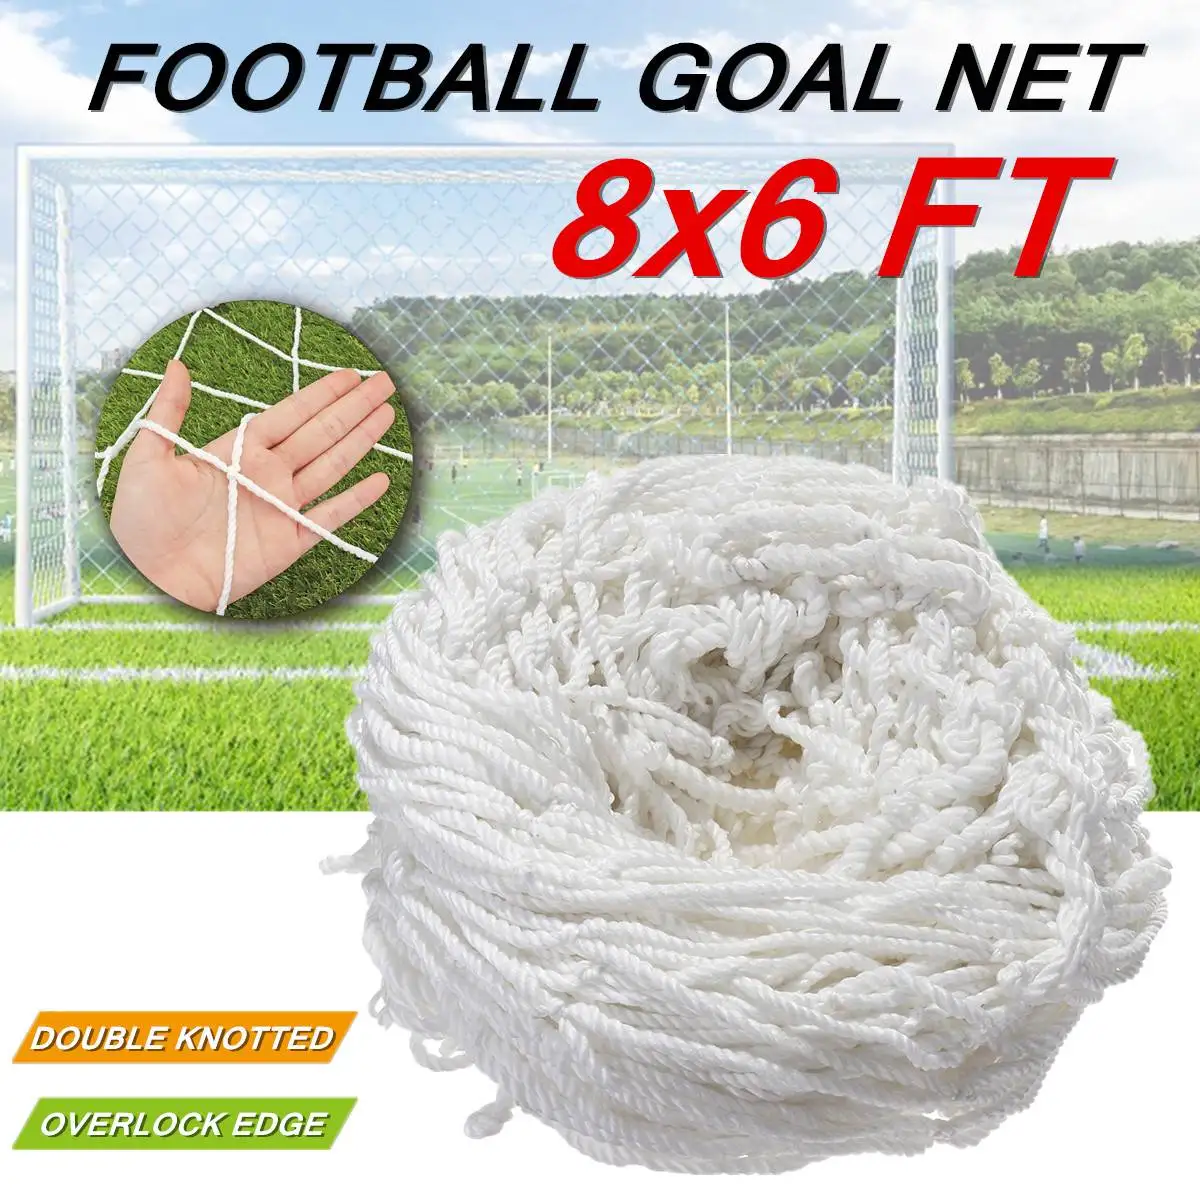 8x6FT полноразмерная сетка для футбольного мяча для спорта на открытом воздухе тренировочный белый гибкий полипропиленовый оверлочный светильник